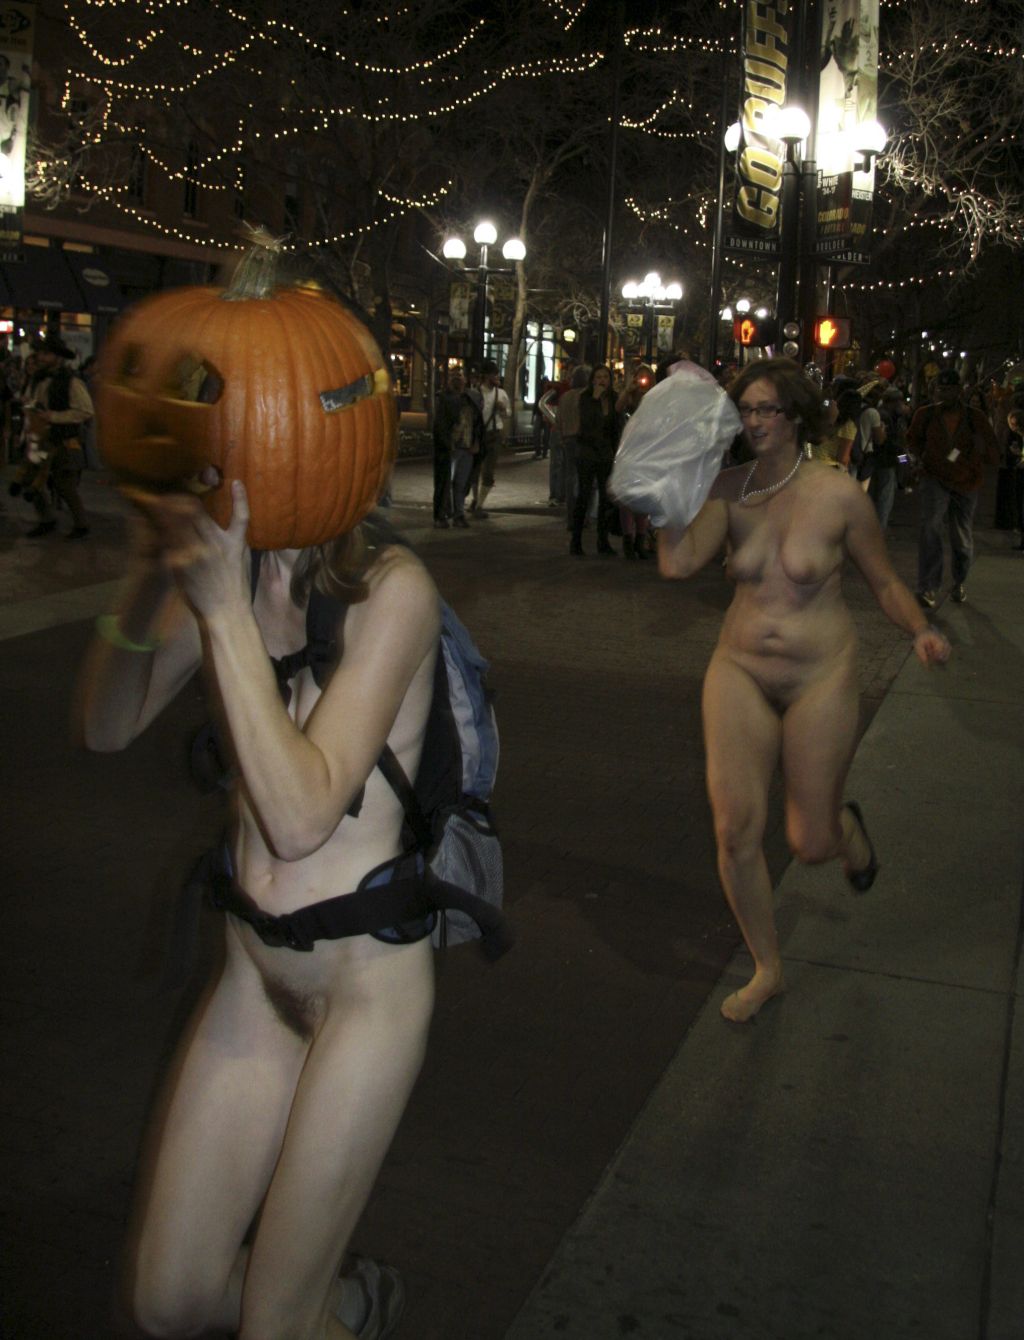 Naked pumpkin run